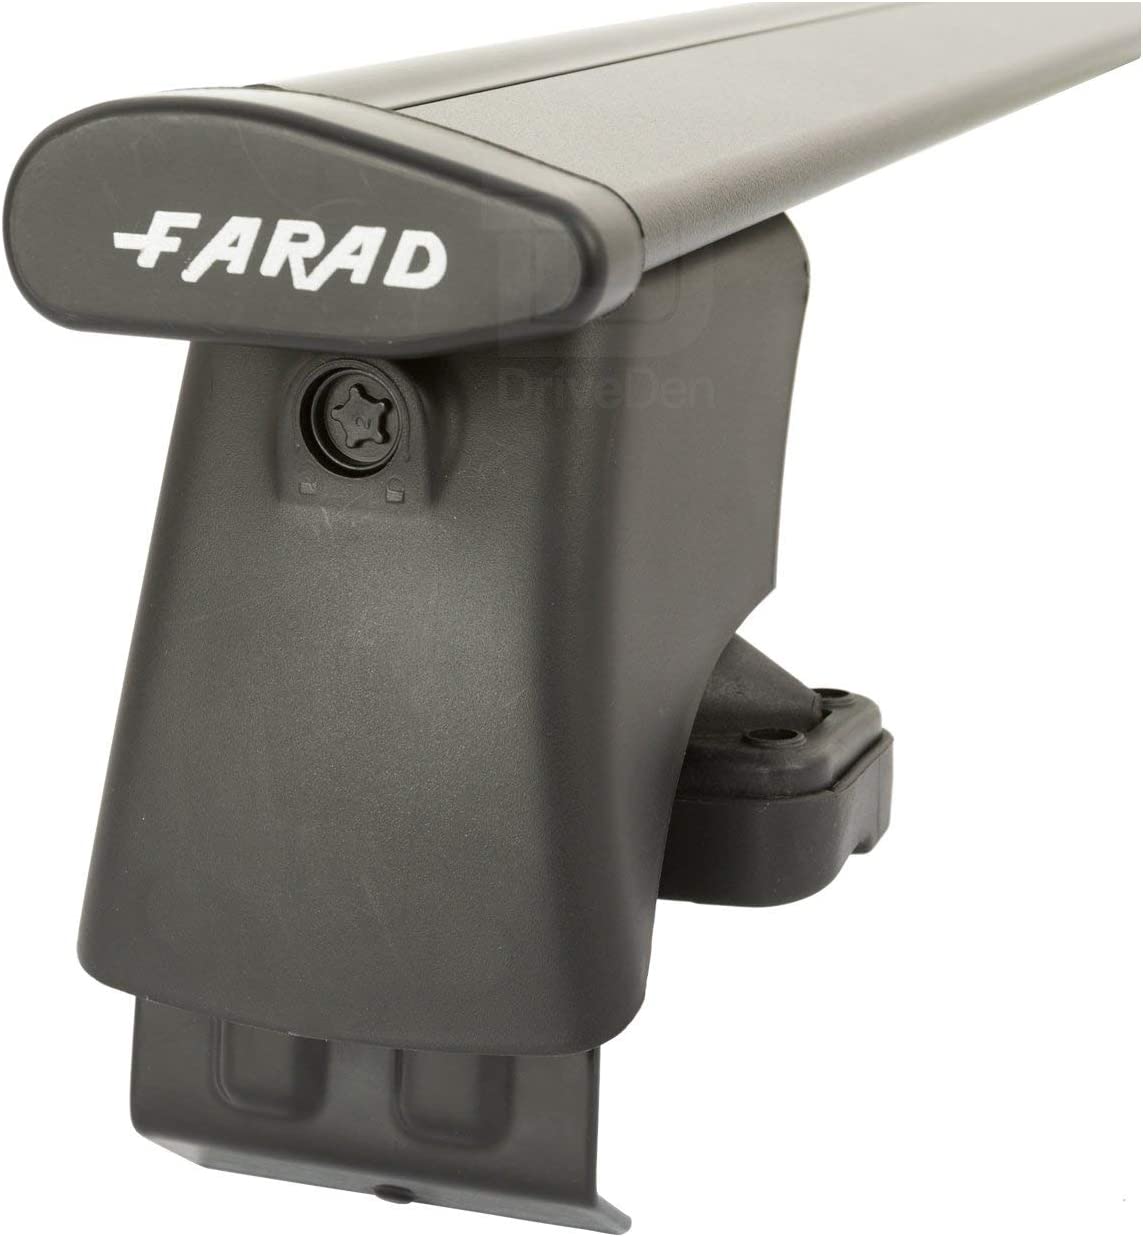 FARAD-Kit H2 per barre portatutto - Skoda Octavia 2020> (senza corrimano)